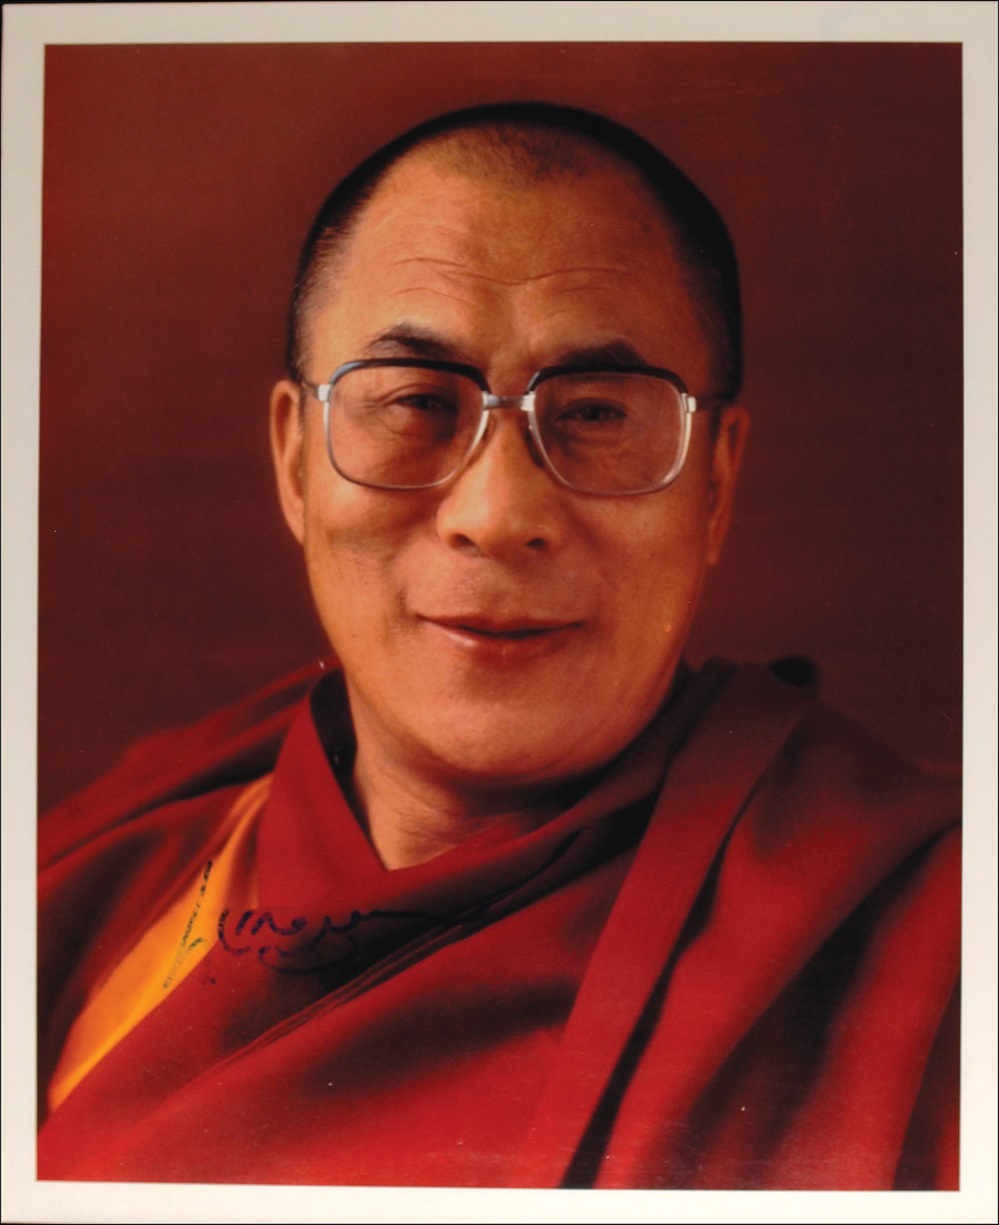 Lot #173 Dalai Lama